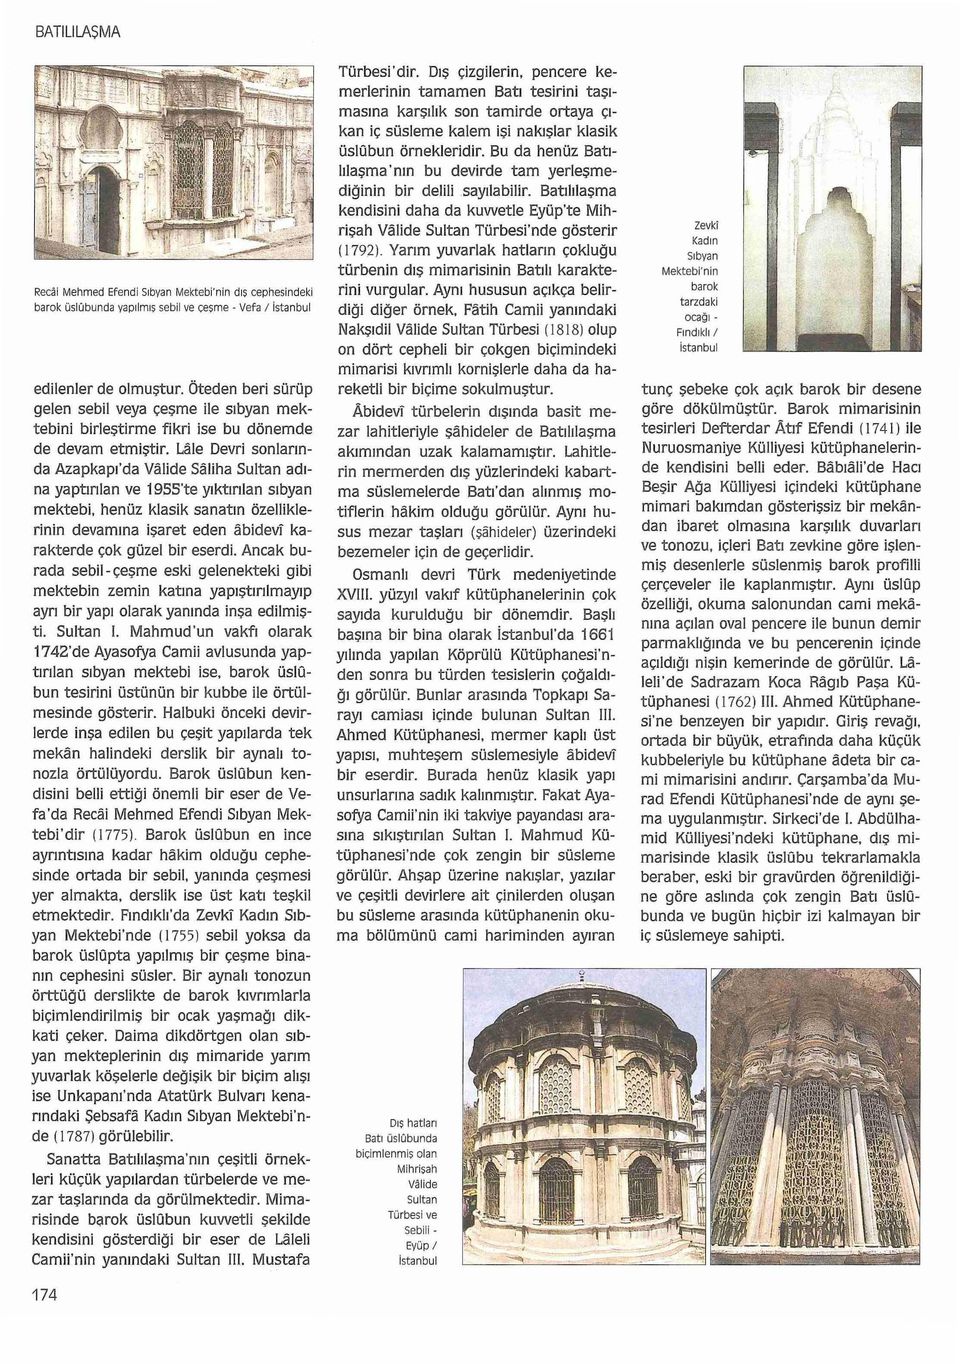 Lale Devri sonlarında Azapkapı'da Valide Saliha Sultan adına yaptırılan ve 19SS'te yıktırılan sıbyan mektebi.